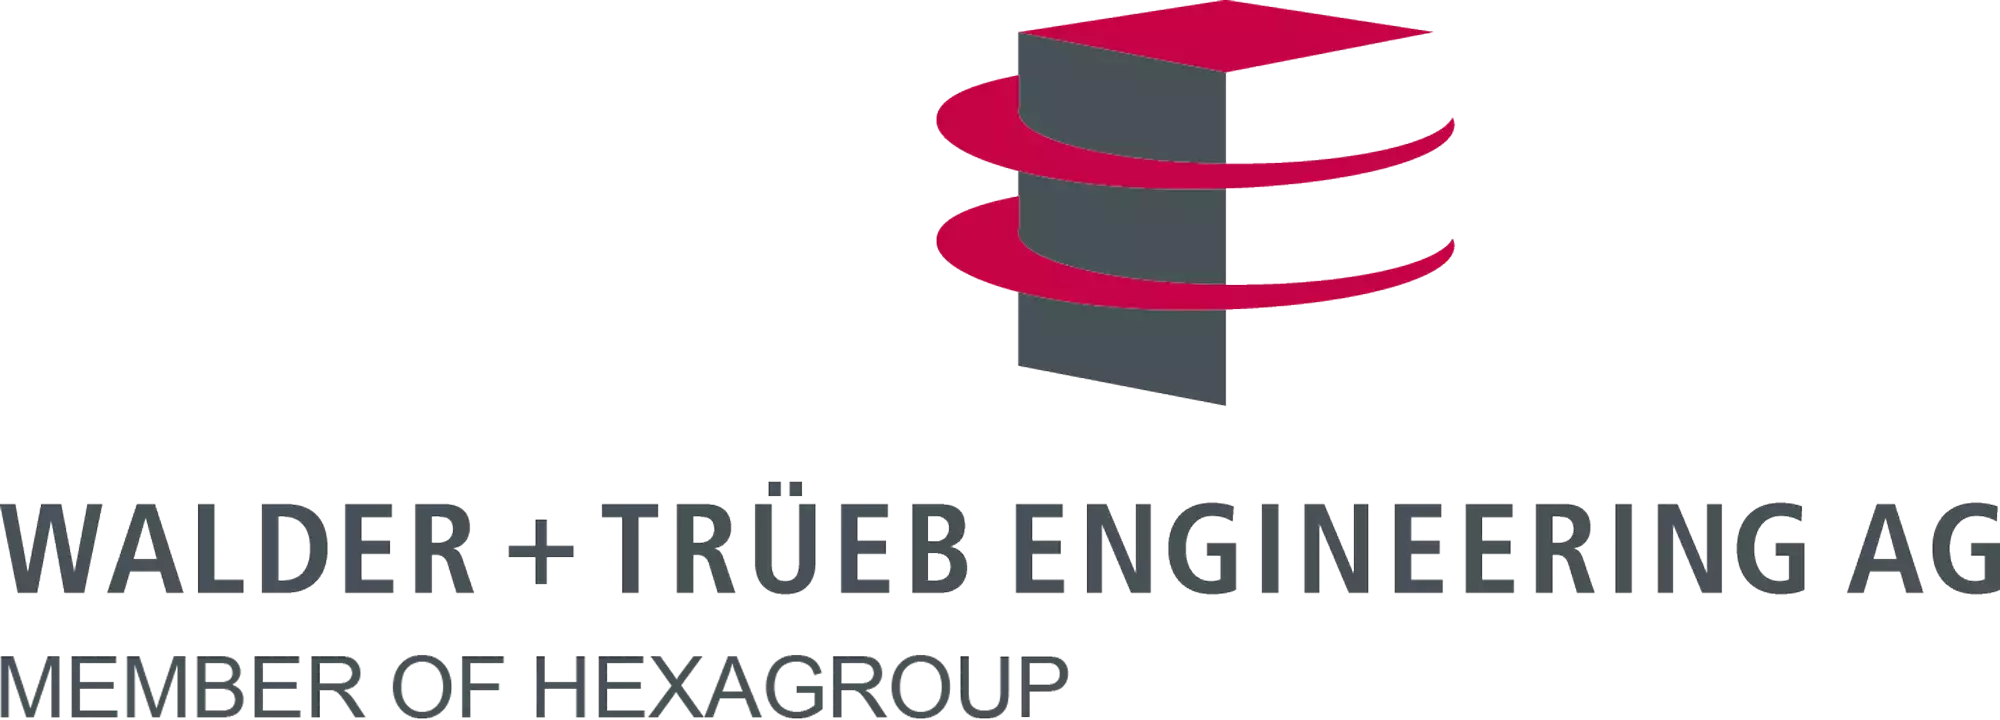 Walder + Trüeb Engineering AG